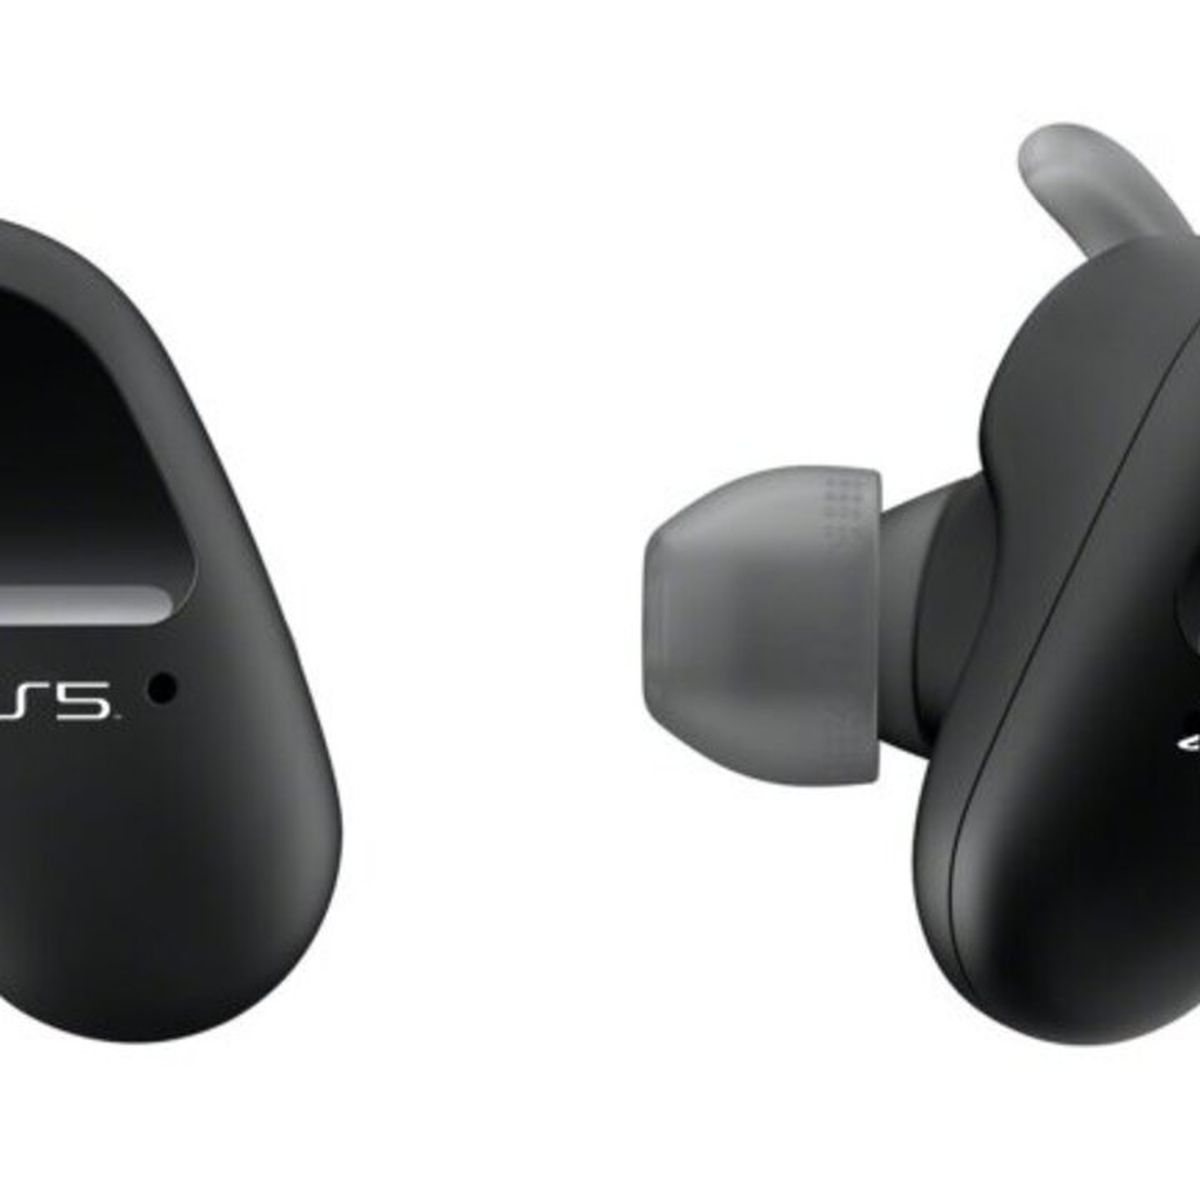 Sony estaría desarrollando auriculares tipo earbuds para PS5